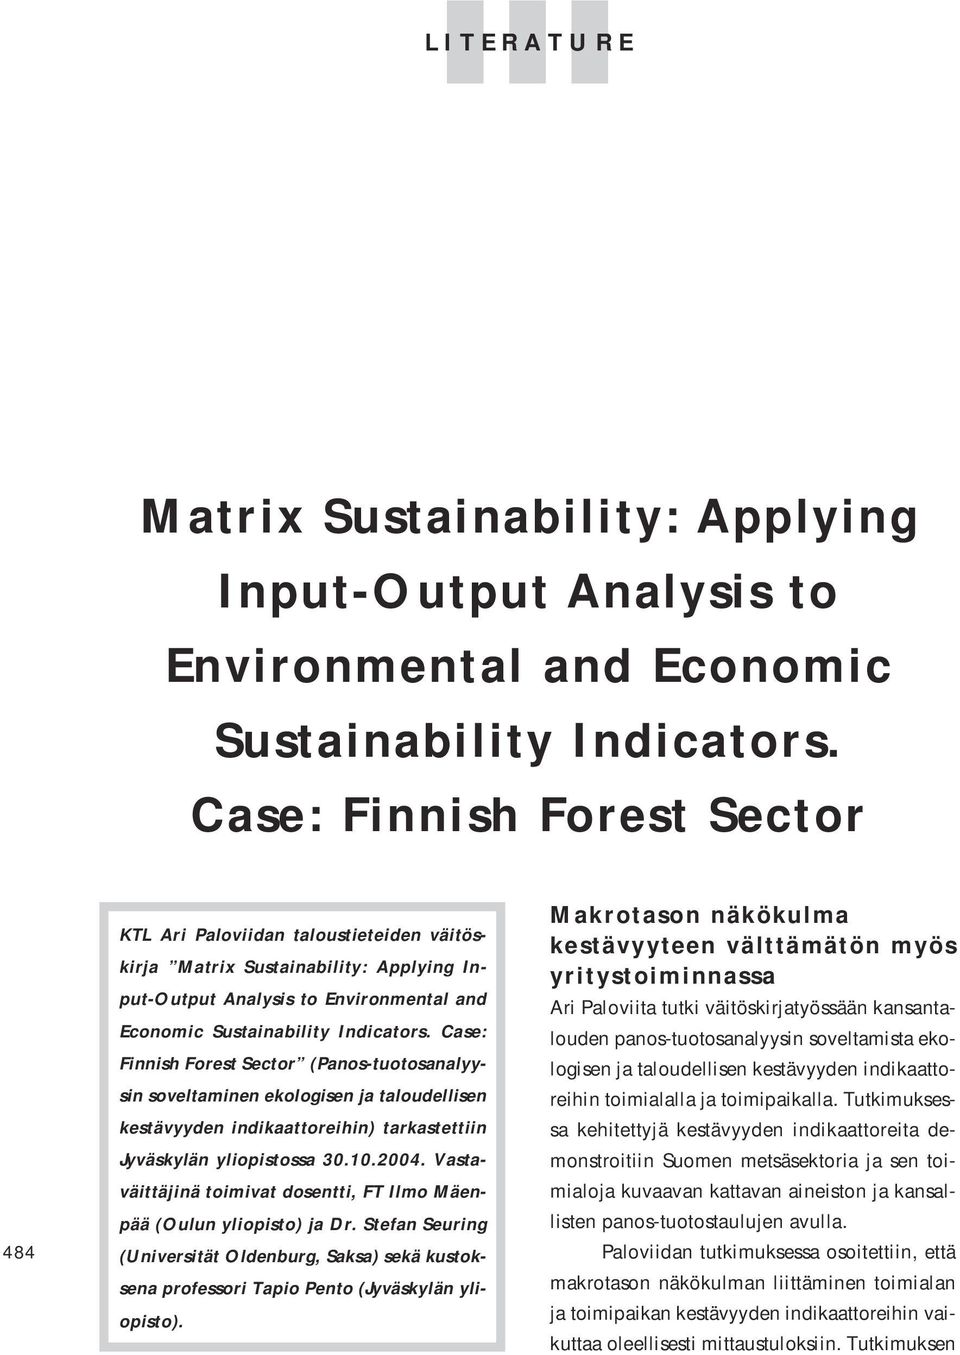 Case: Finnish Forest Sector (Panos-tuotosanalyysin soveltaminen ekologisen ja taloudellisen kestävyyden indikaattoreihin) tarkastettiin Jyväskylän yliopistossa 30.10.2004.